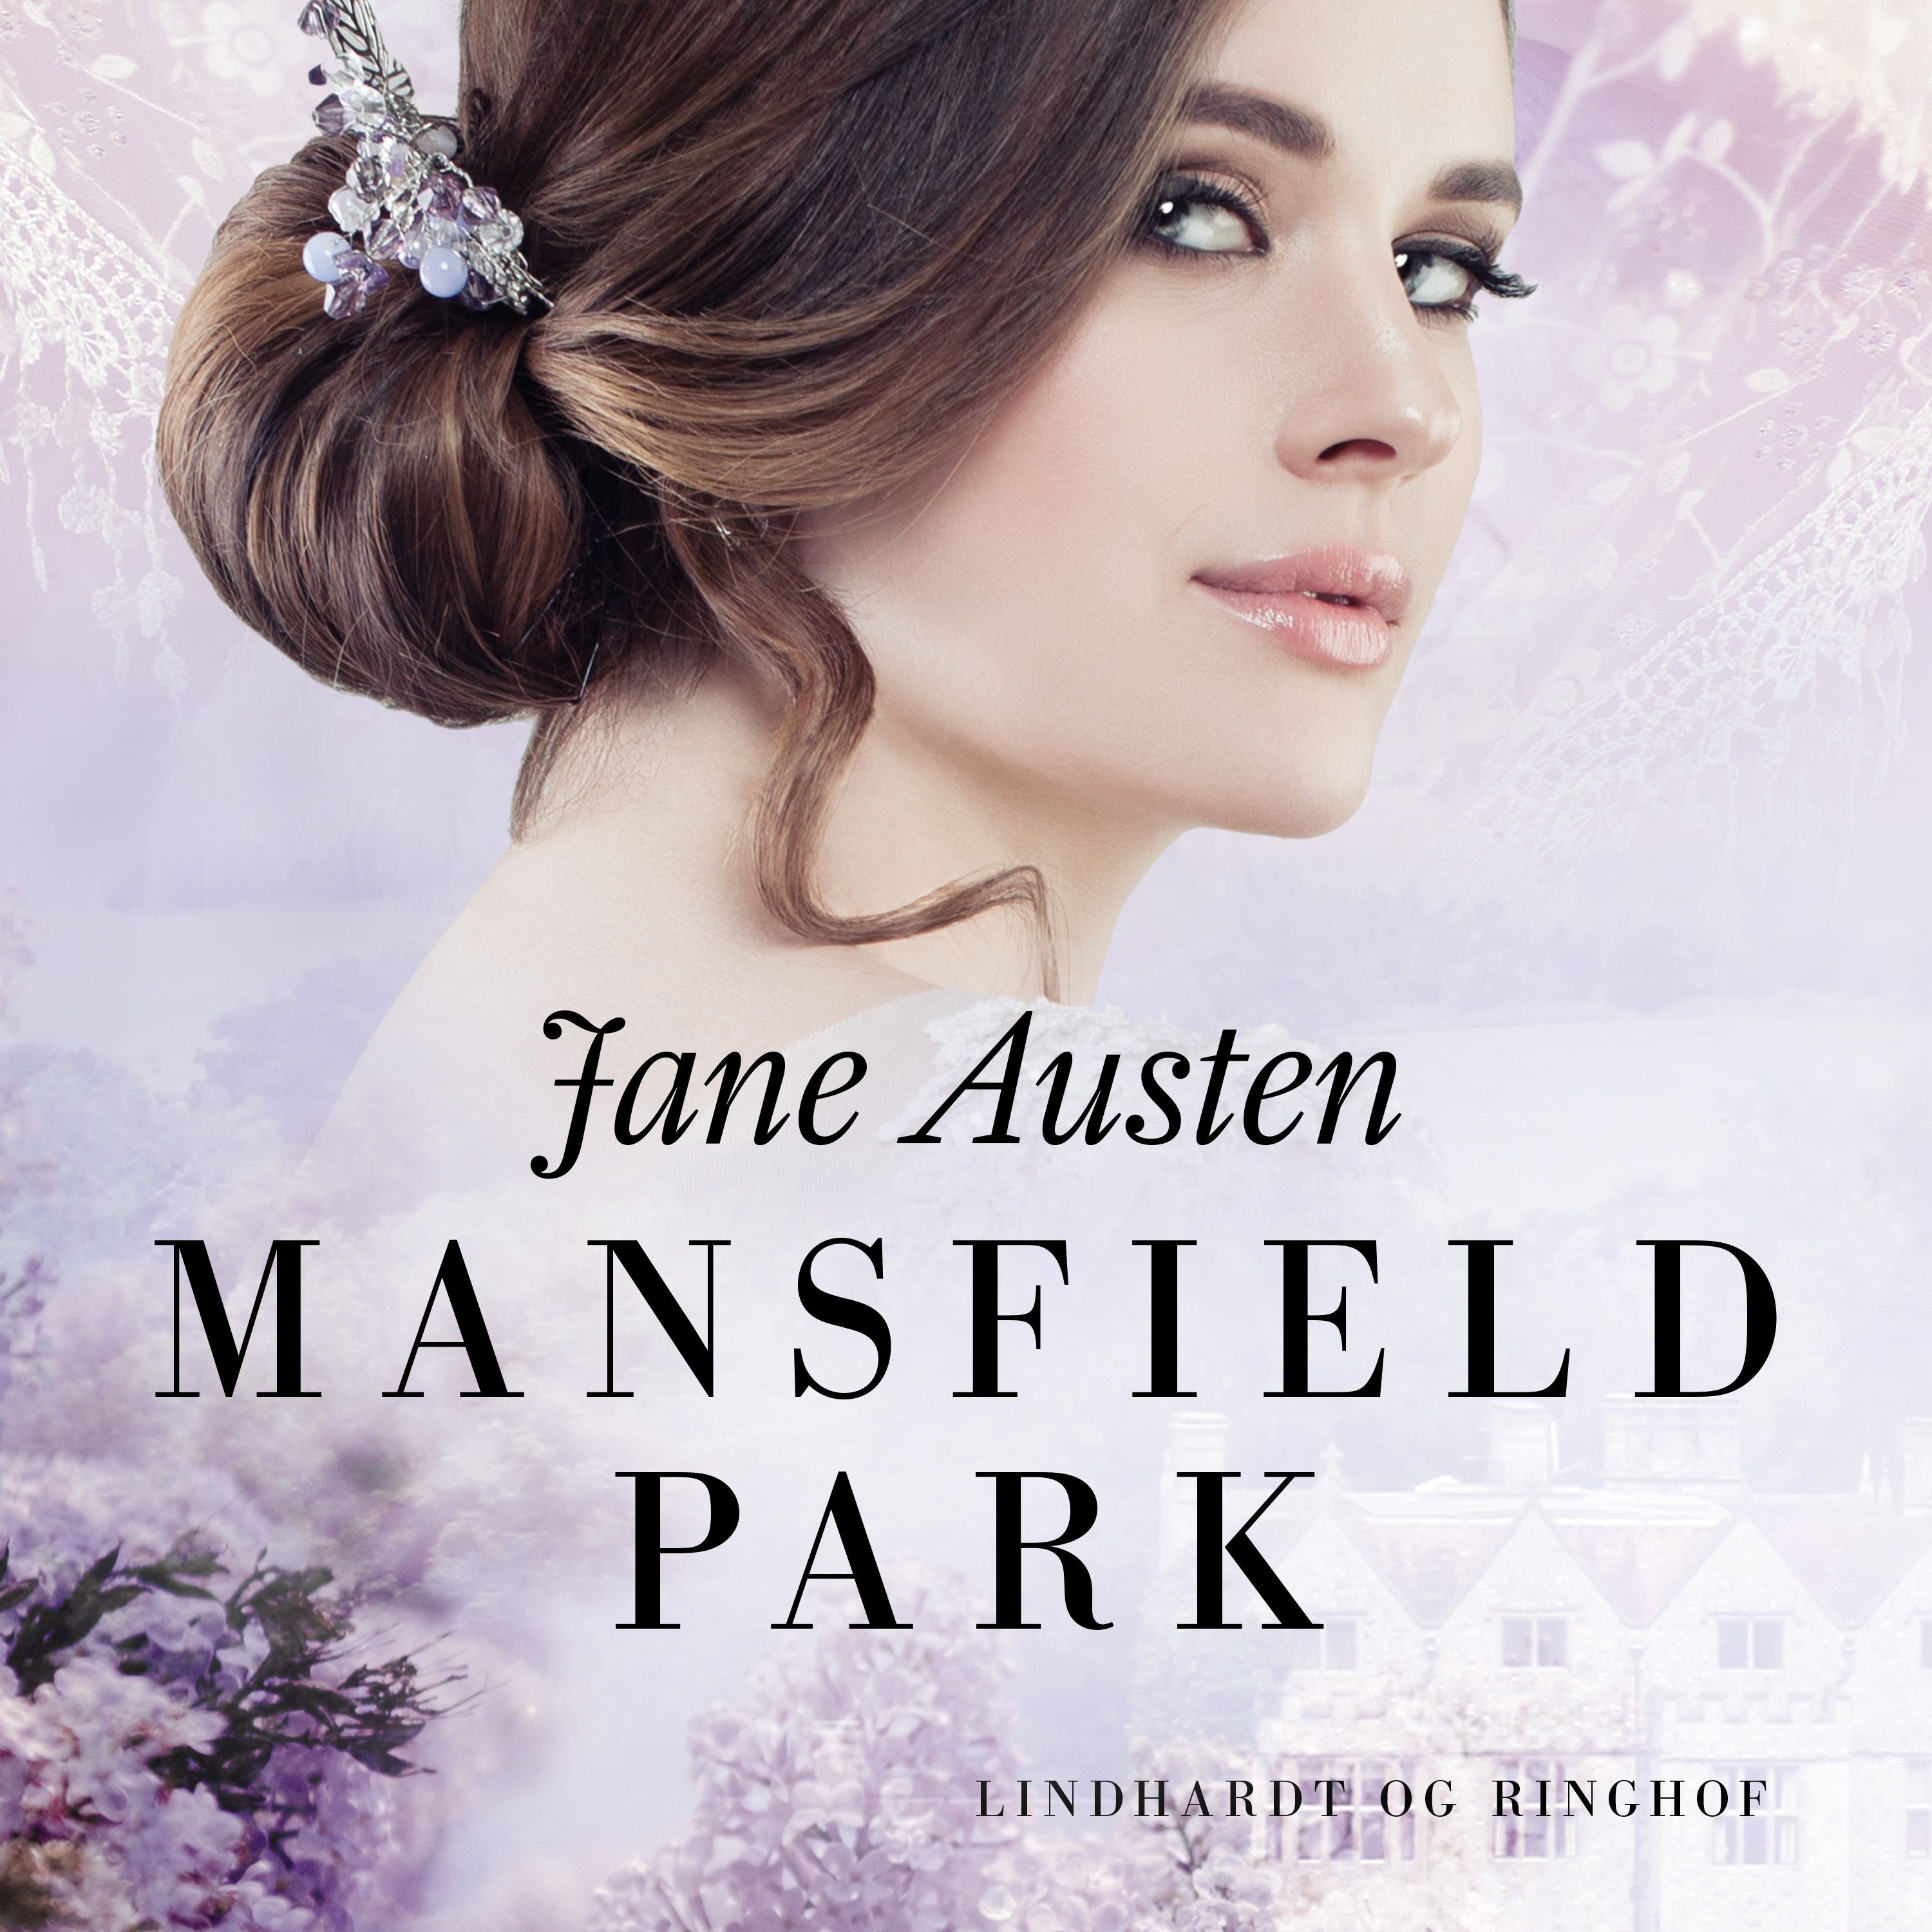 Mansfield Park, ljudbok av Jane Austen